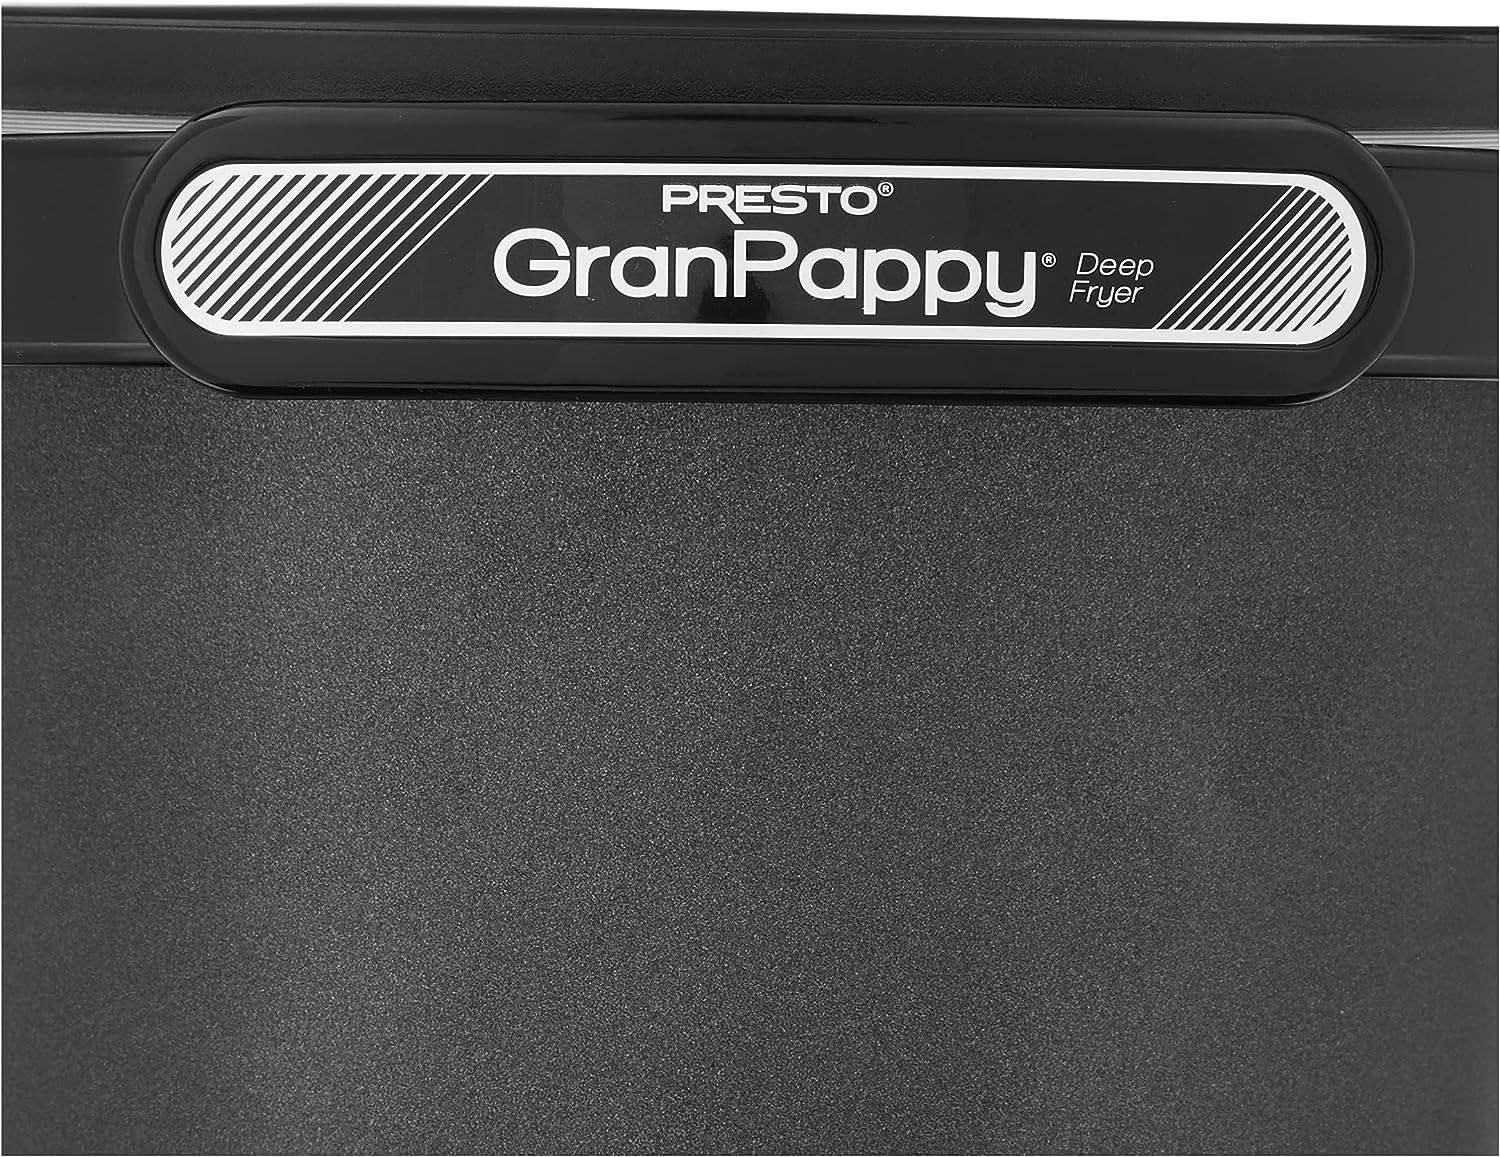 Presto 5411 GranPappy Electric Deep Fryer - Black